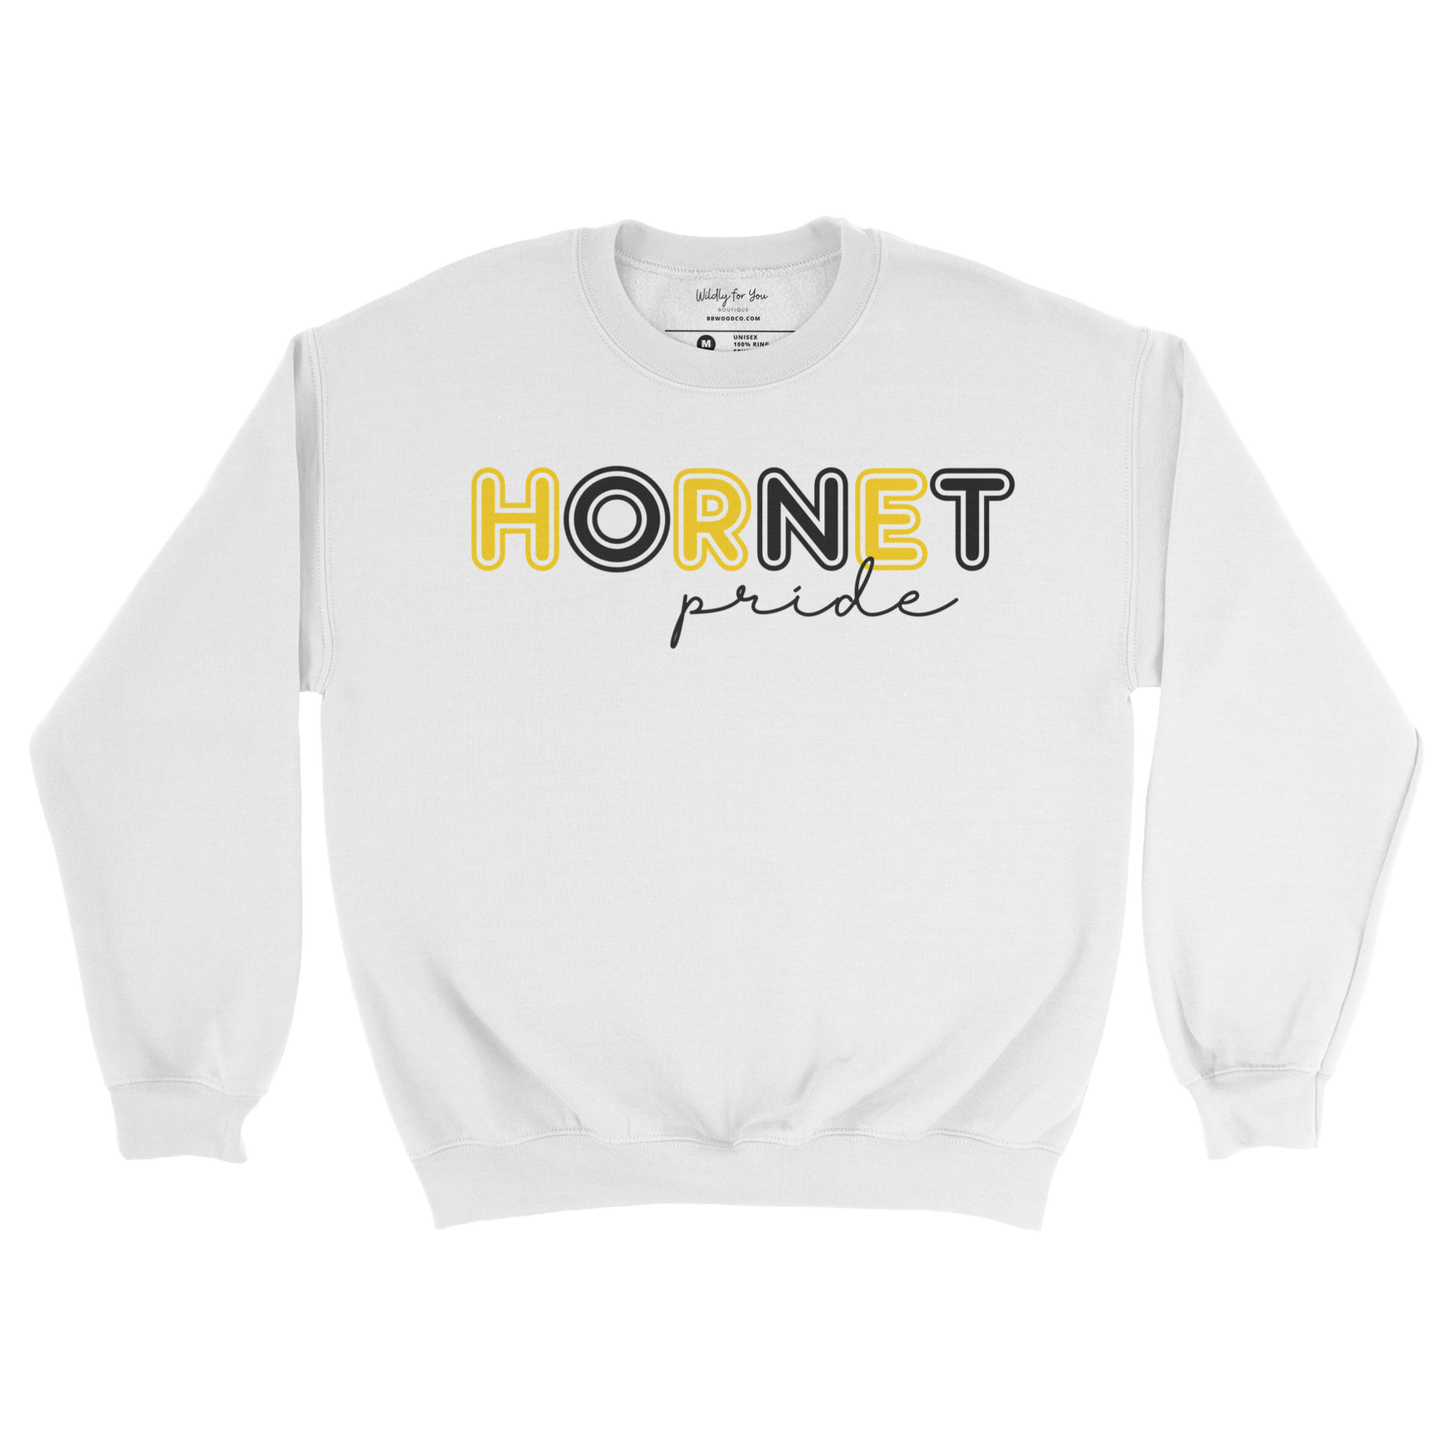 Hornet Pride Crewneck Sweatshirt